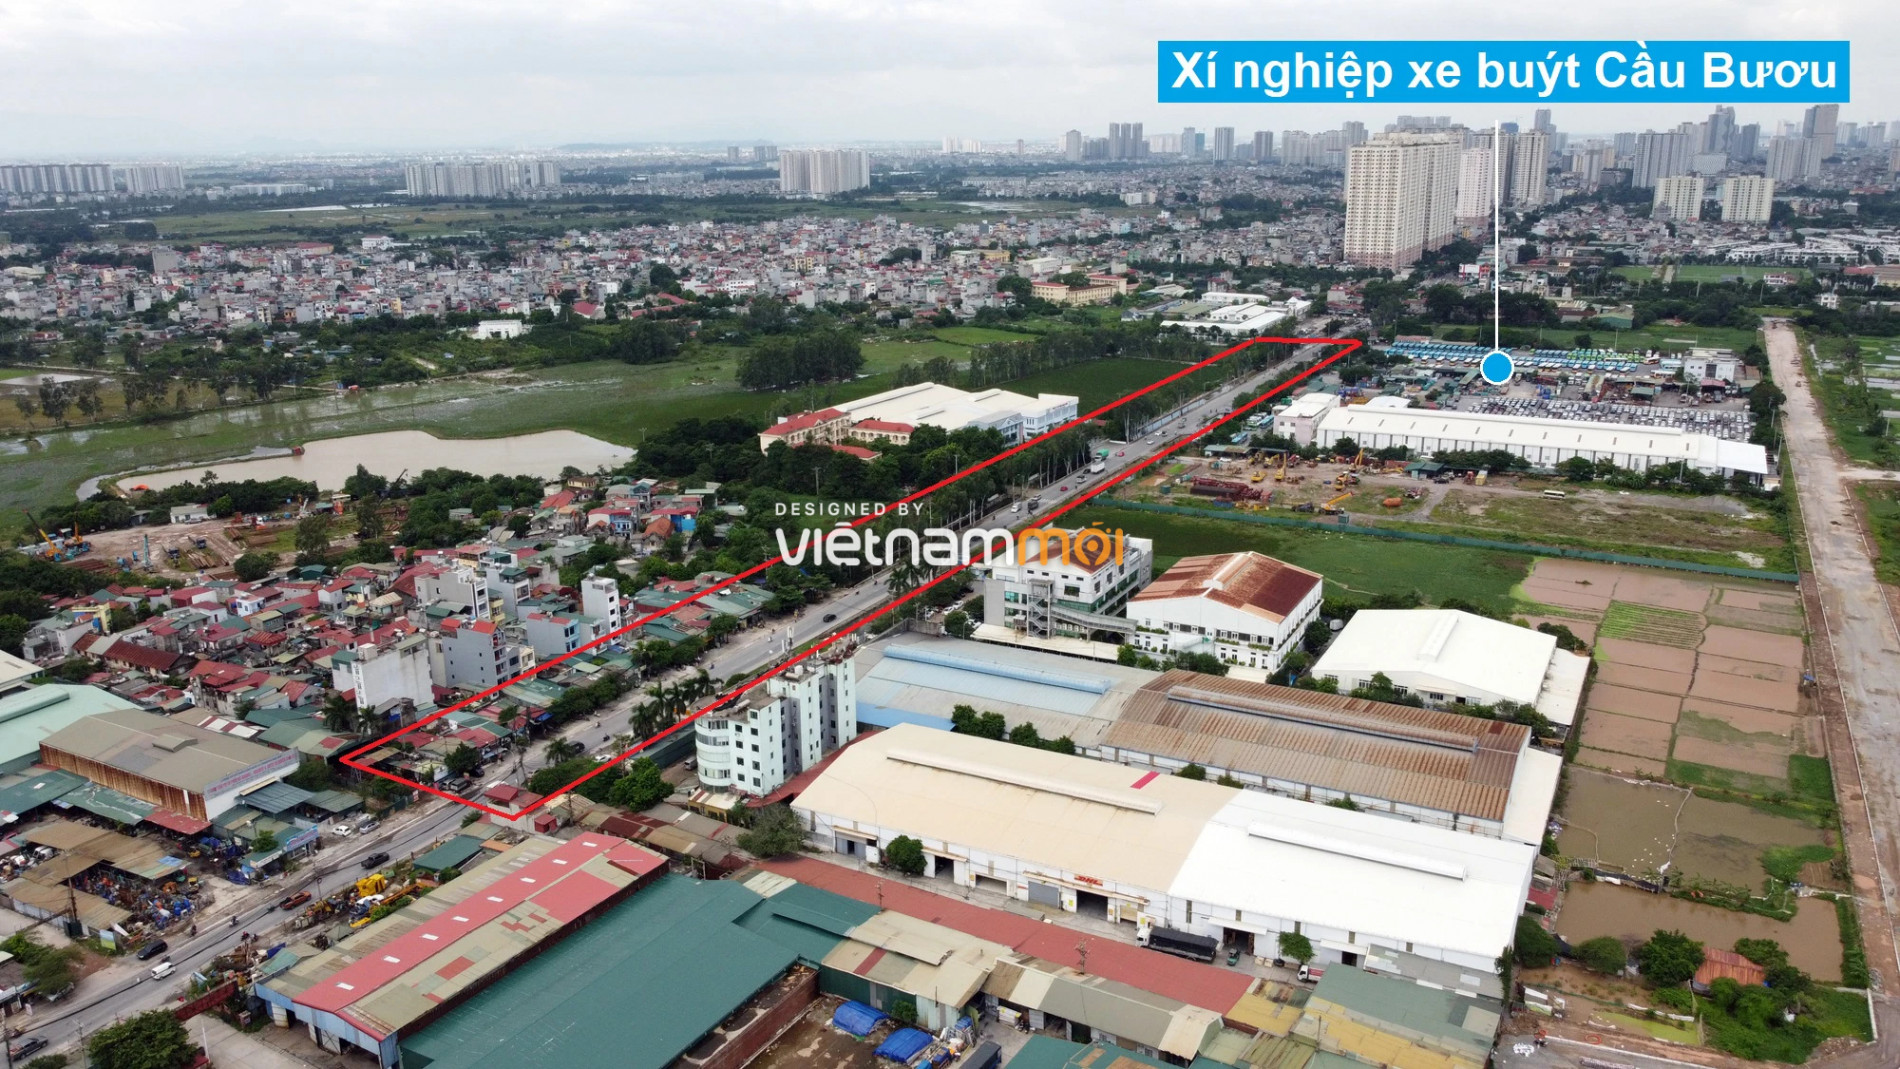 Những khu đất sắp thu hồi để mở đường ở xã Thanh Liệt, Thanh Trì, Hà Nội (phần 6) - Ảnh 16.